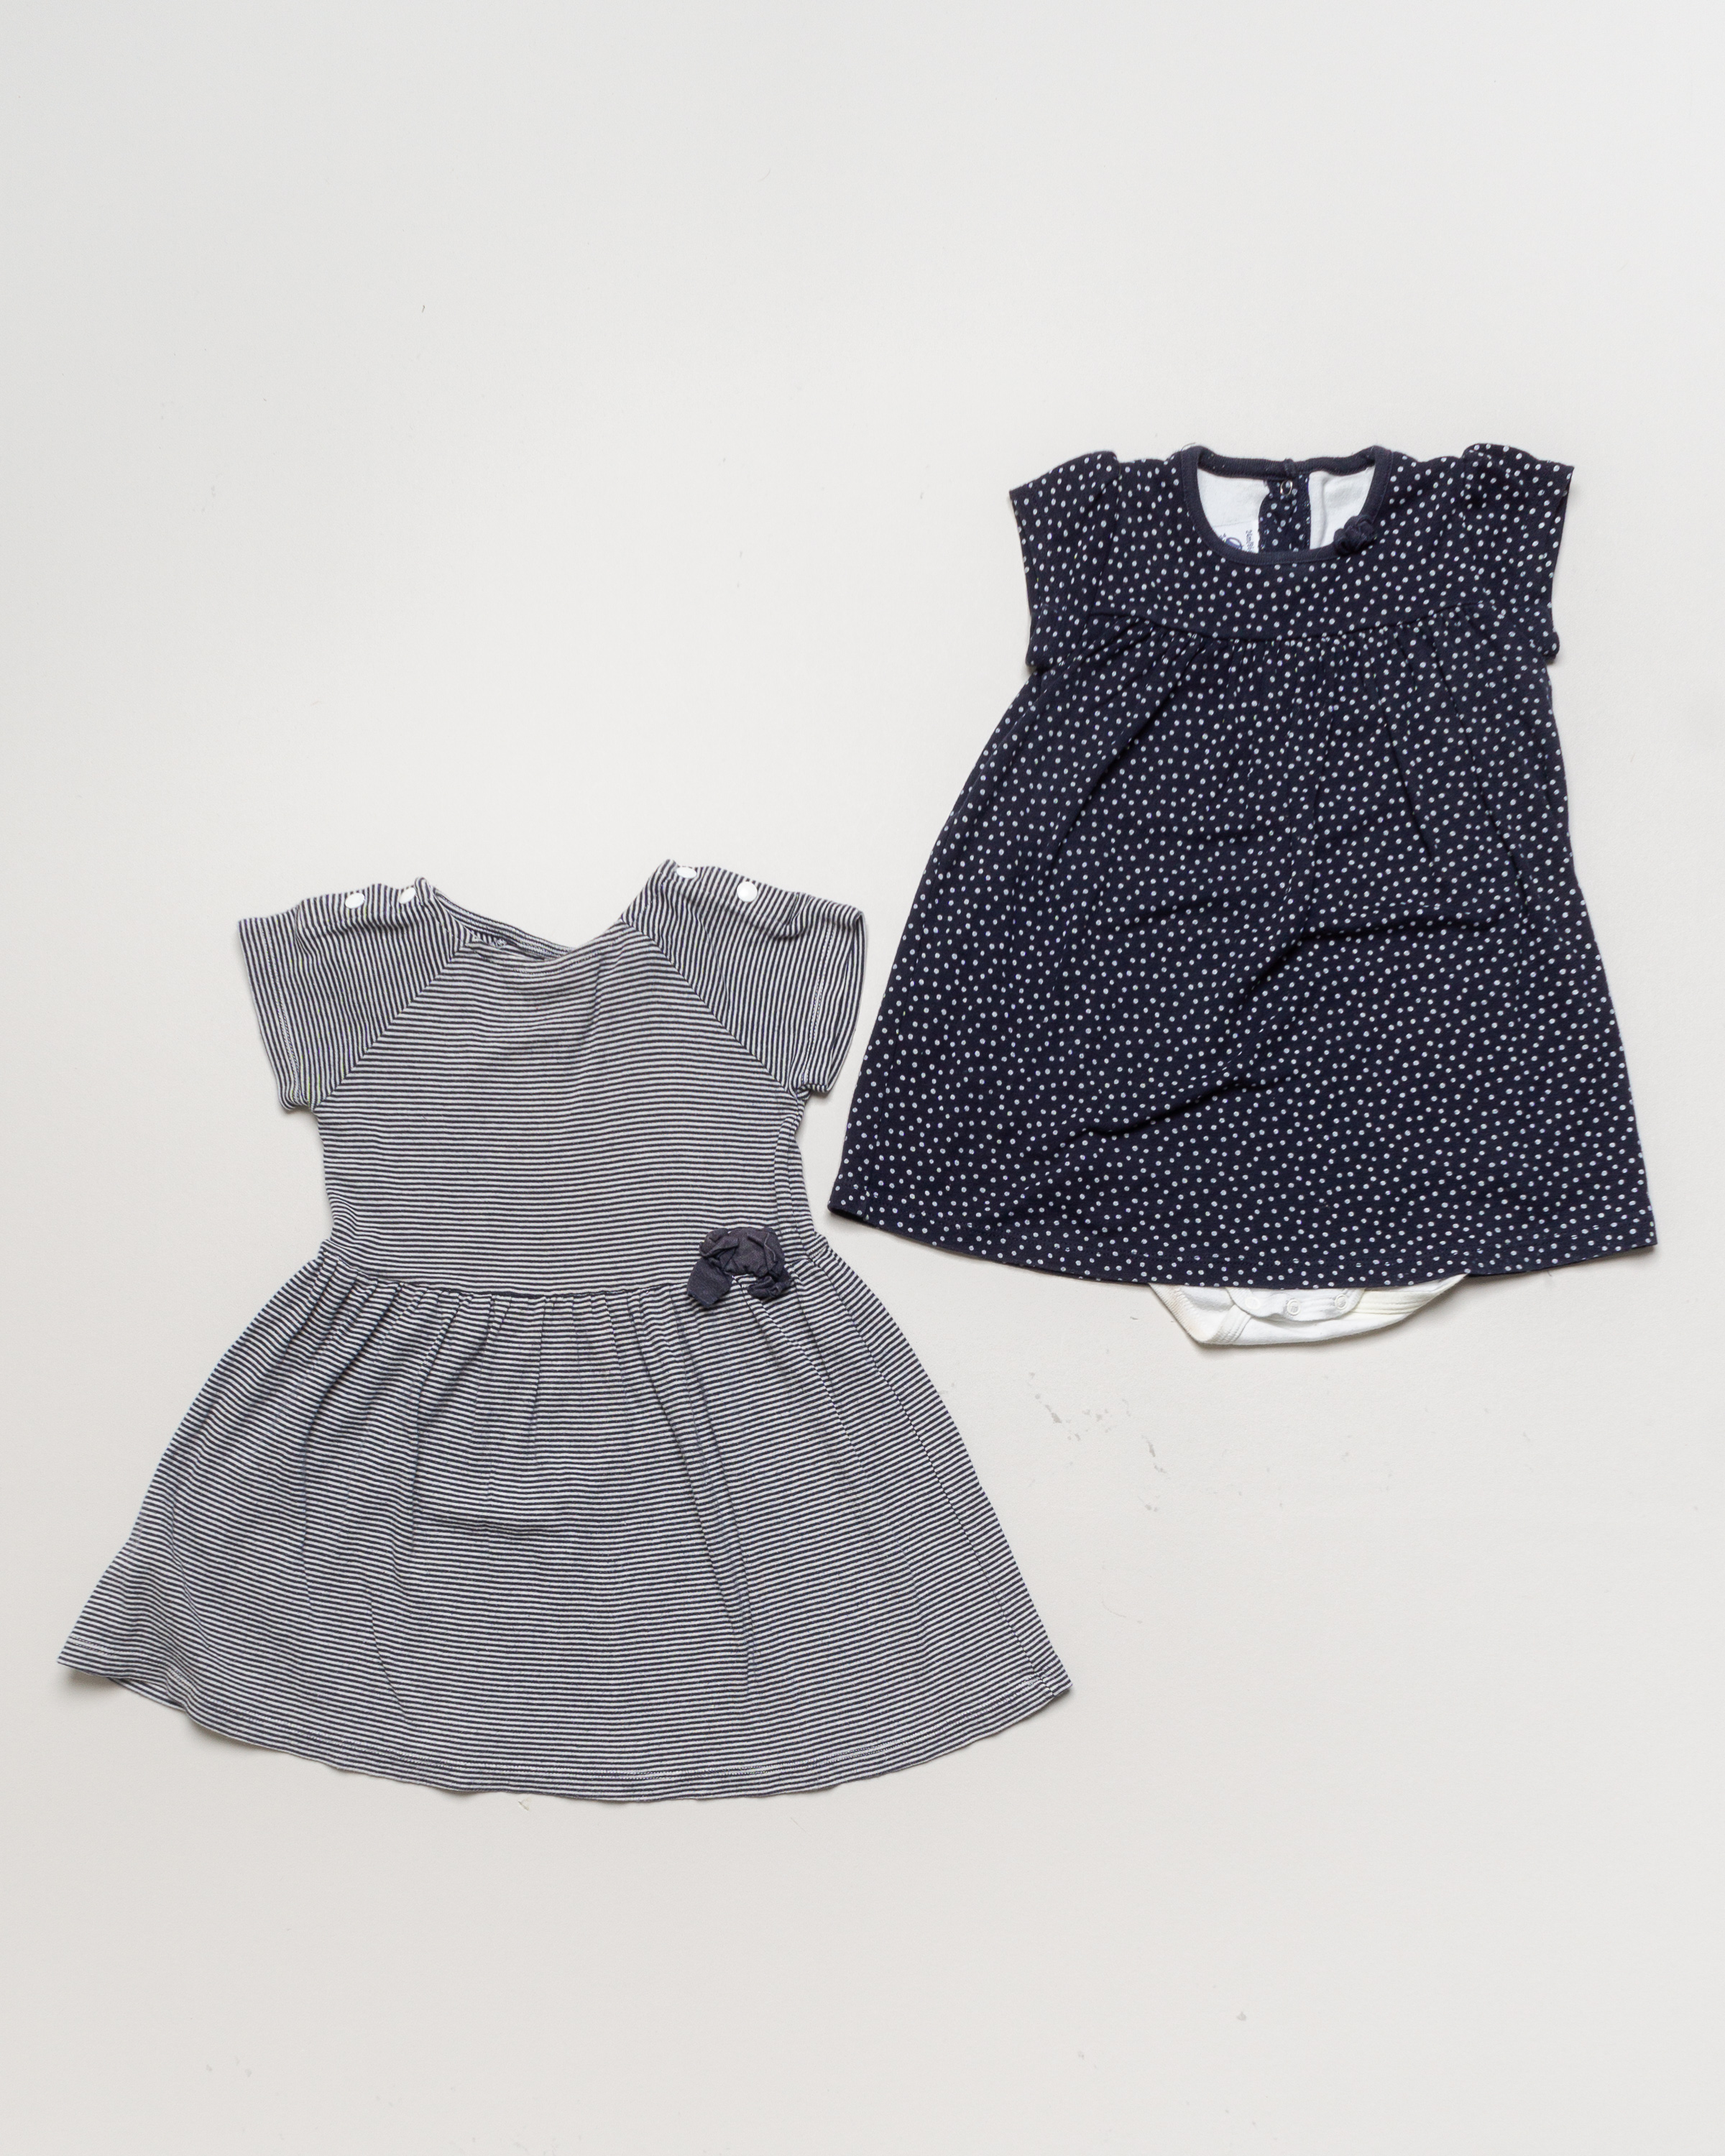 2x Kleider Gr. 86 – 2x PETIT BATEAU Body mit Kleid Schleife Streifen Punkte Set Pack Baby